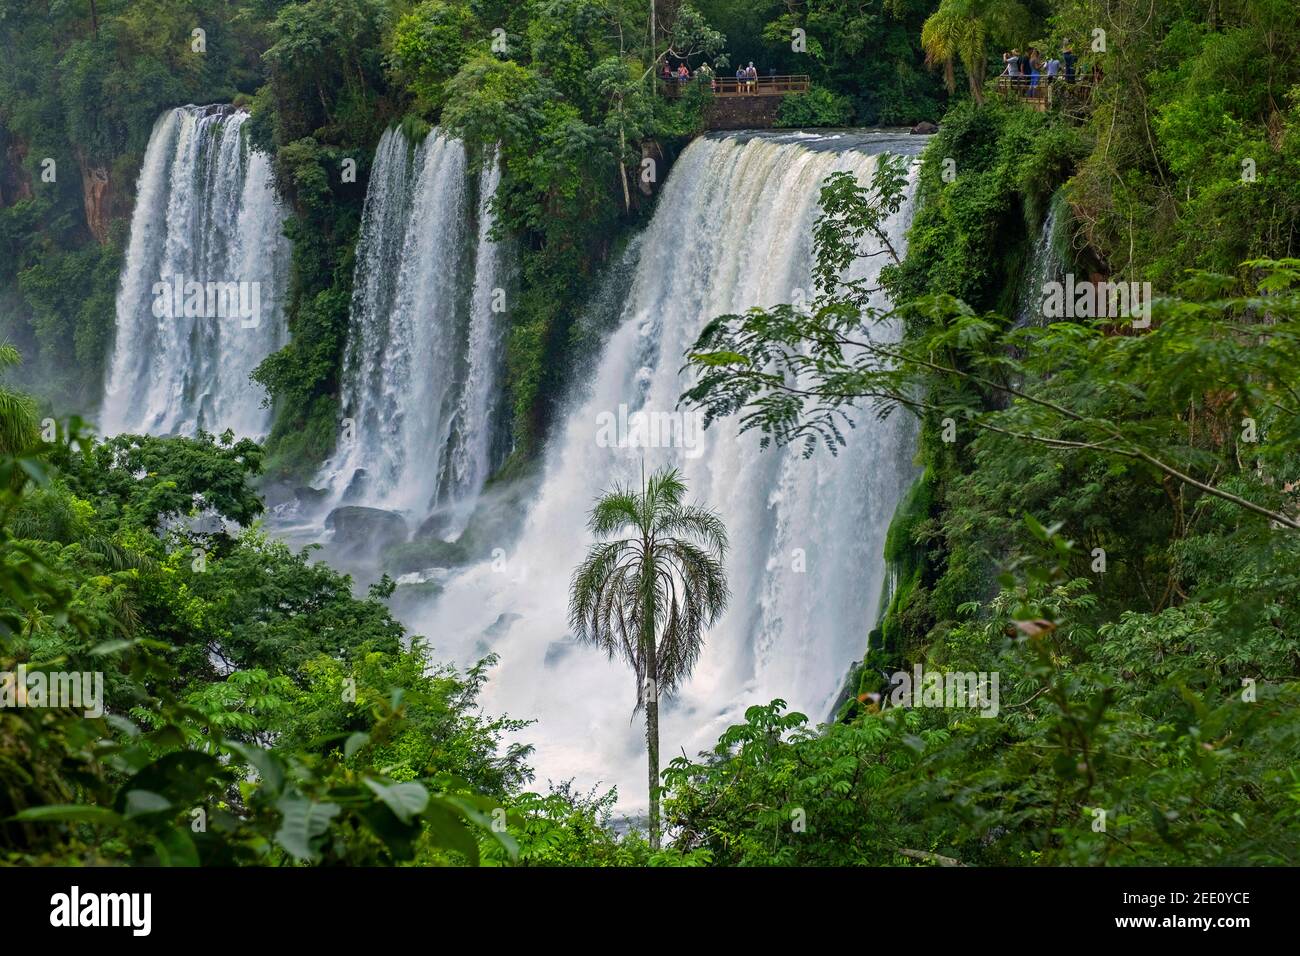 Chutes d'Iguazú / chutes d'Iguaçu, chutes d'eau de la rivière Iguazu à la frontière de la province Argentine de Misiones et de l'état brésilien de Paraná Banque D'Images